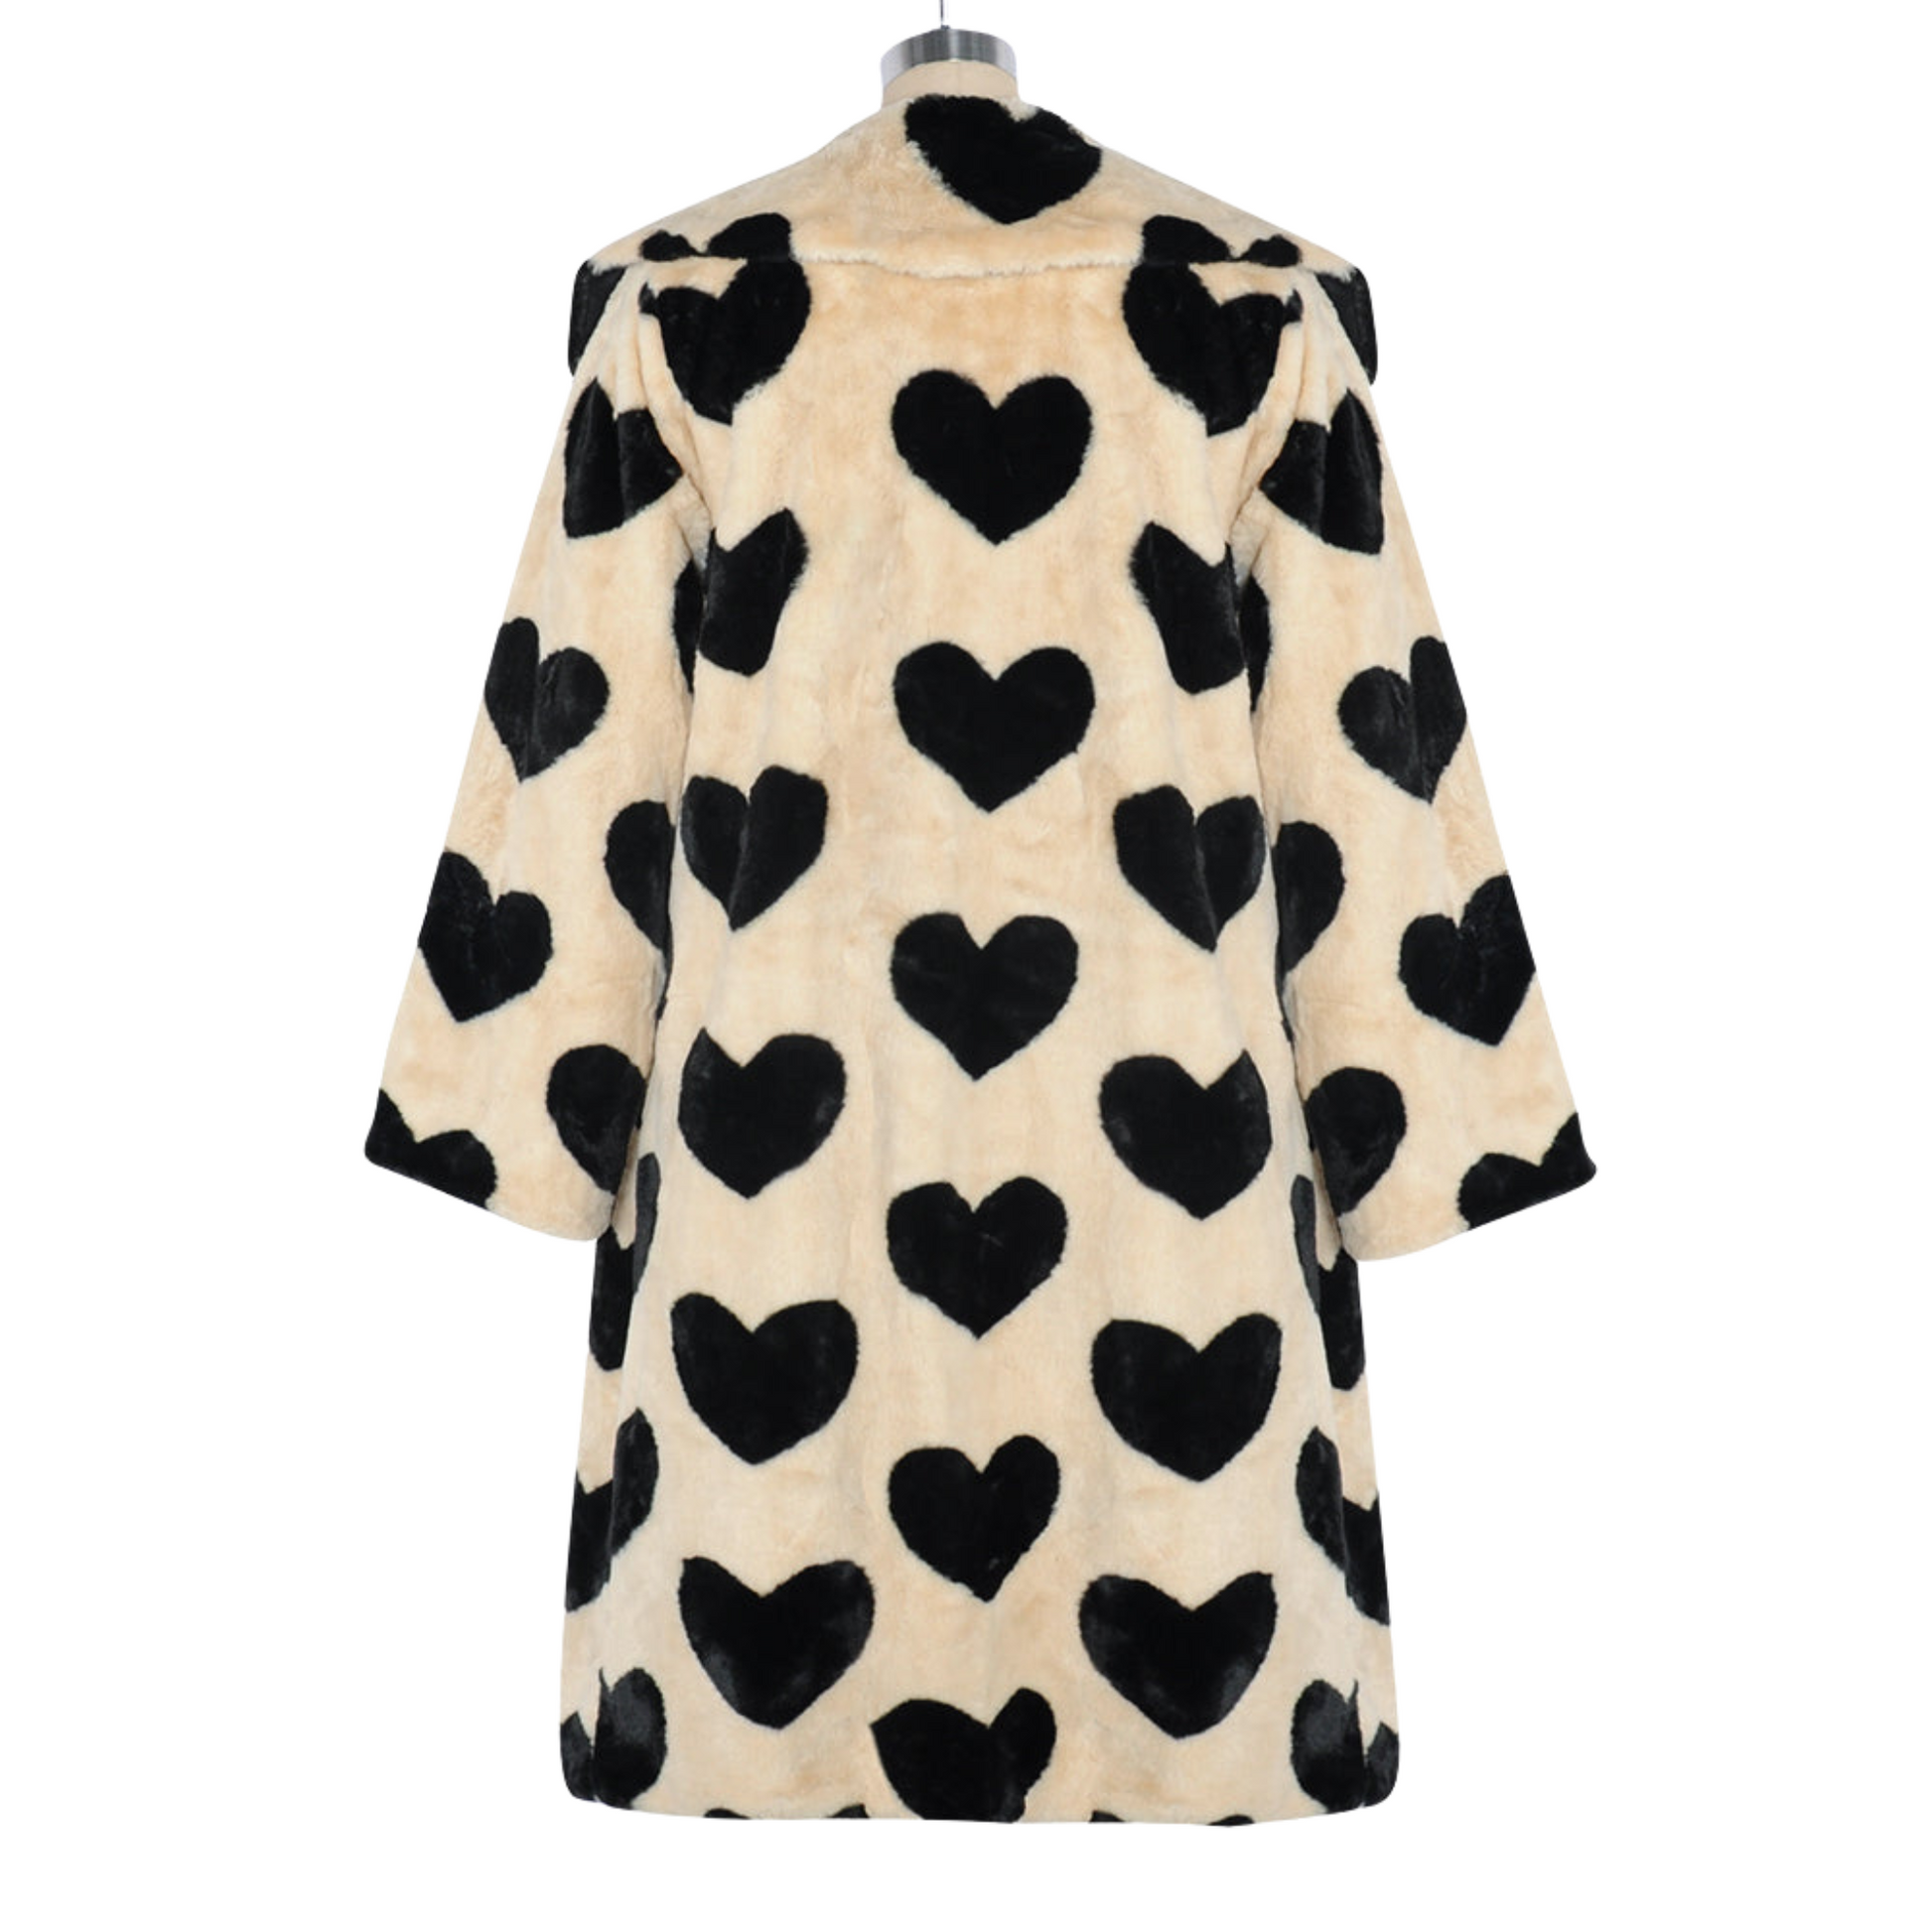 Faux Fur Heart Coat | Dreamofthe90s